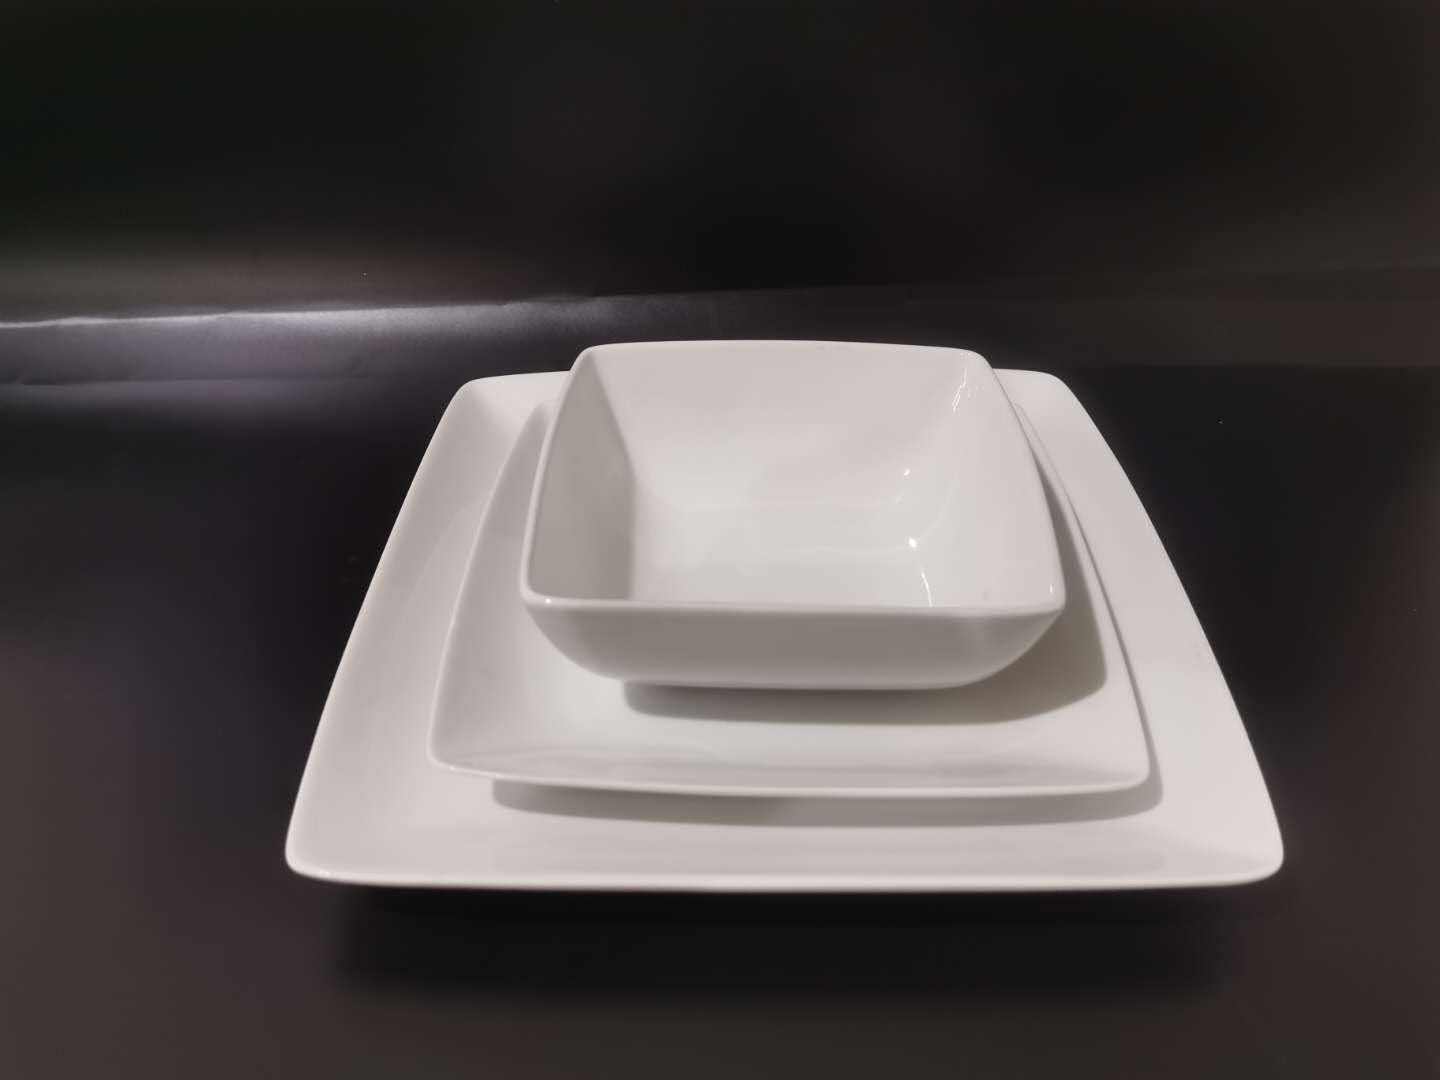 16头方形陶瓷餐具套装   纯白色陶瓷餐具套装  餐具套装详情图2